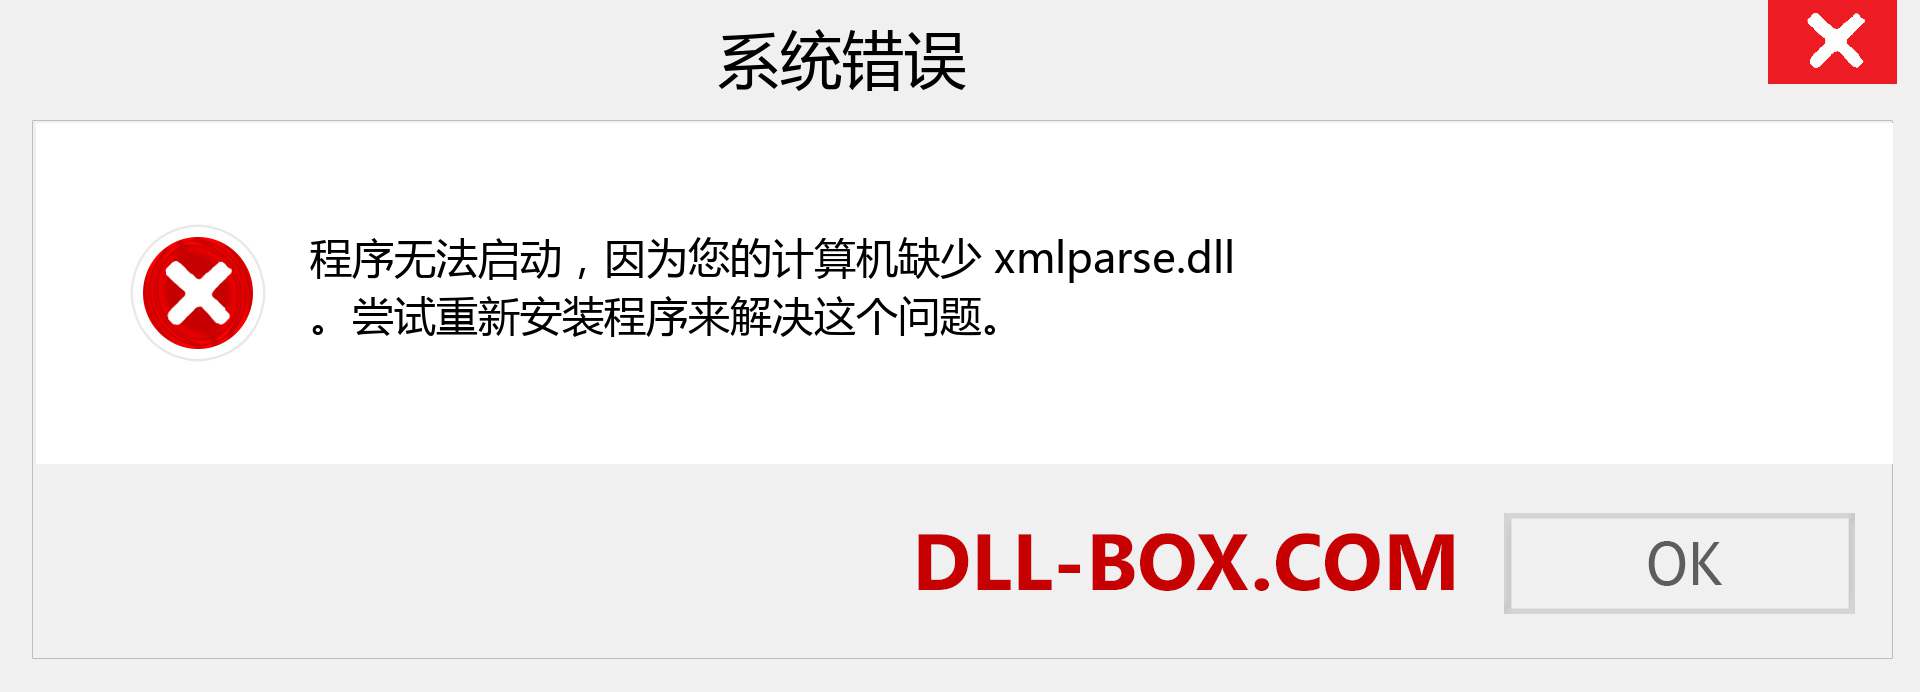 xmlparse.dll 文件丢失？。 适用于 Windows 7、8、10 的下载 - 修复 Windows、照片、图像上的 xmlparse dll 丢失错误